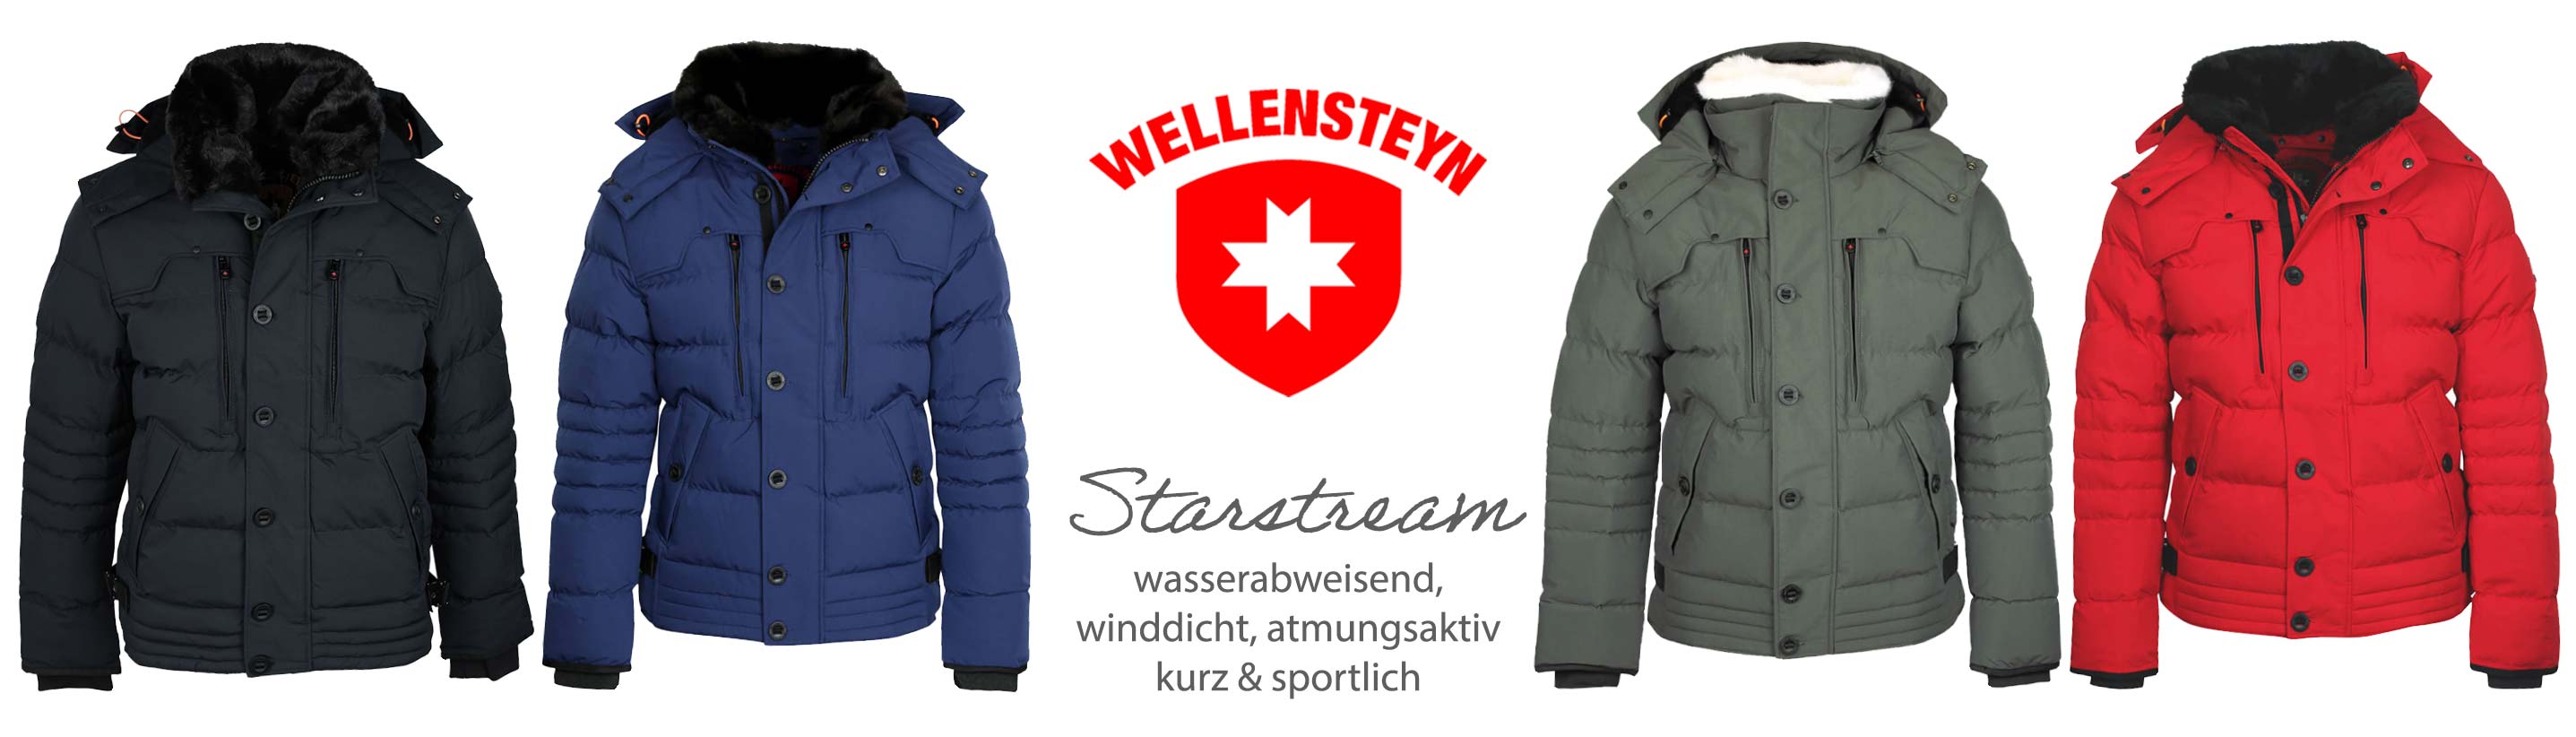 Wellensteyn Starstream